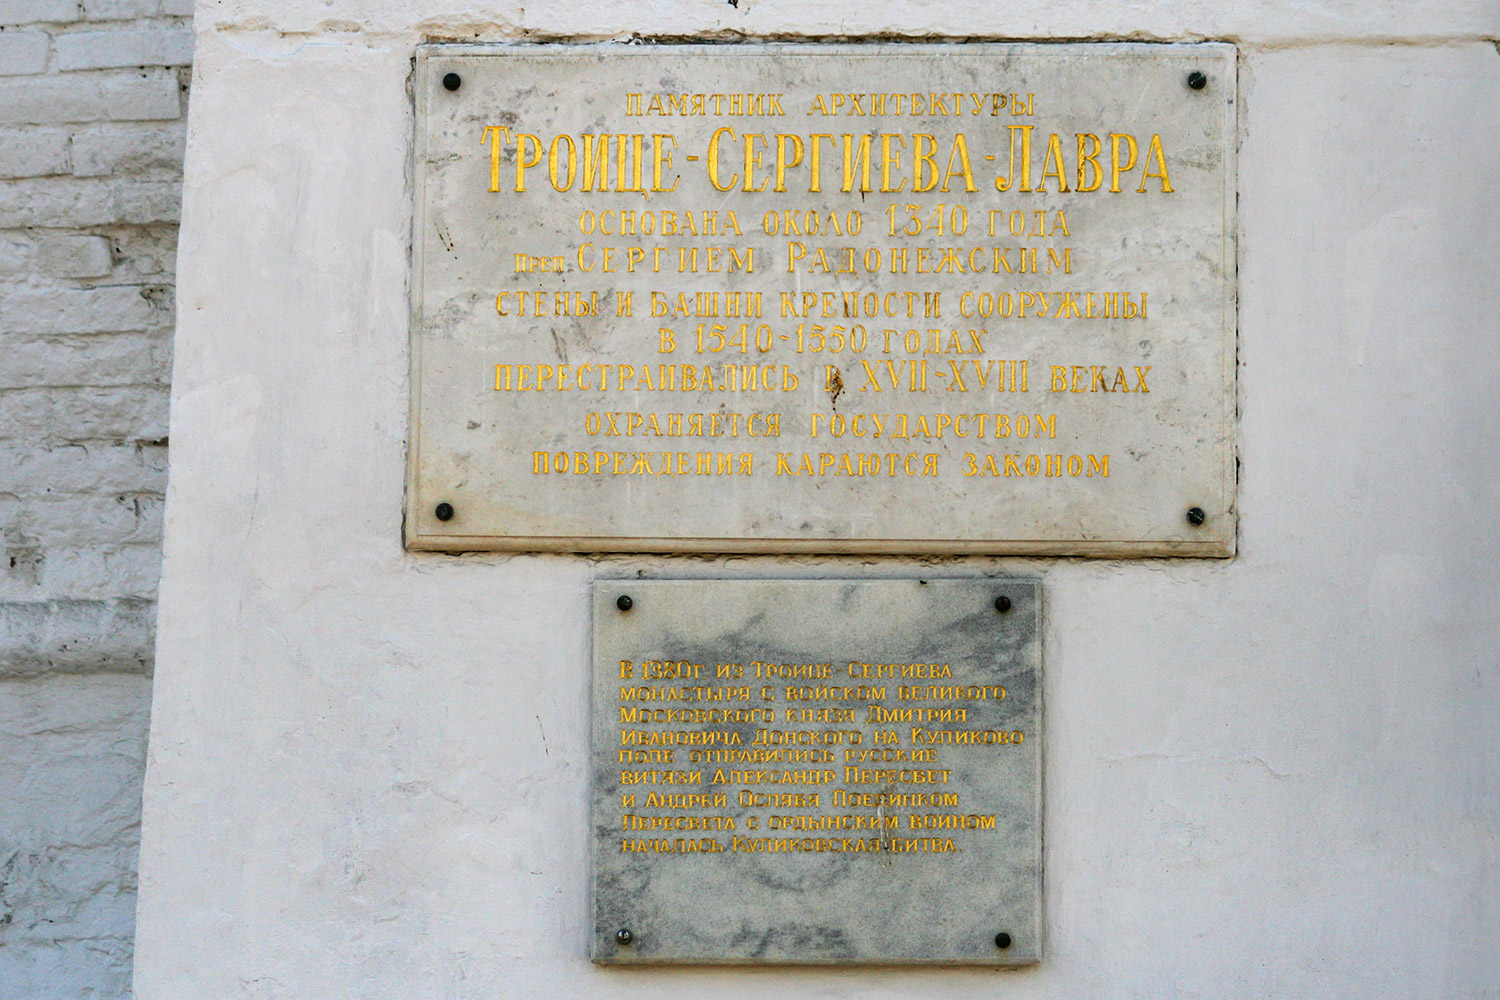 Sergiev Posad, Свято-Троицкая Сергиева лавра, Красная башня. Memorial plaques